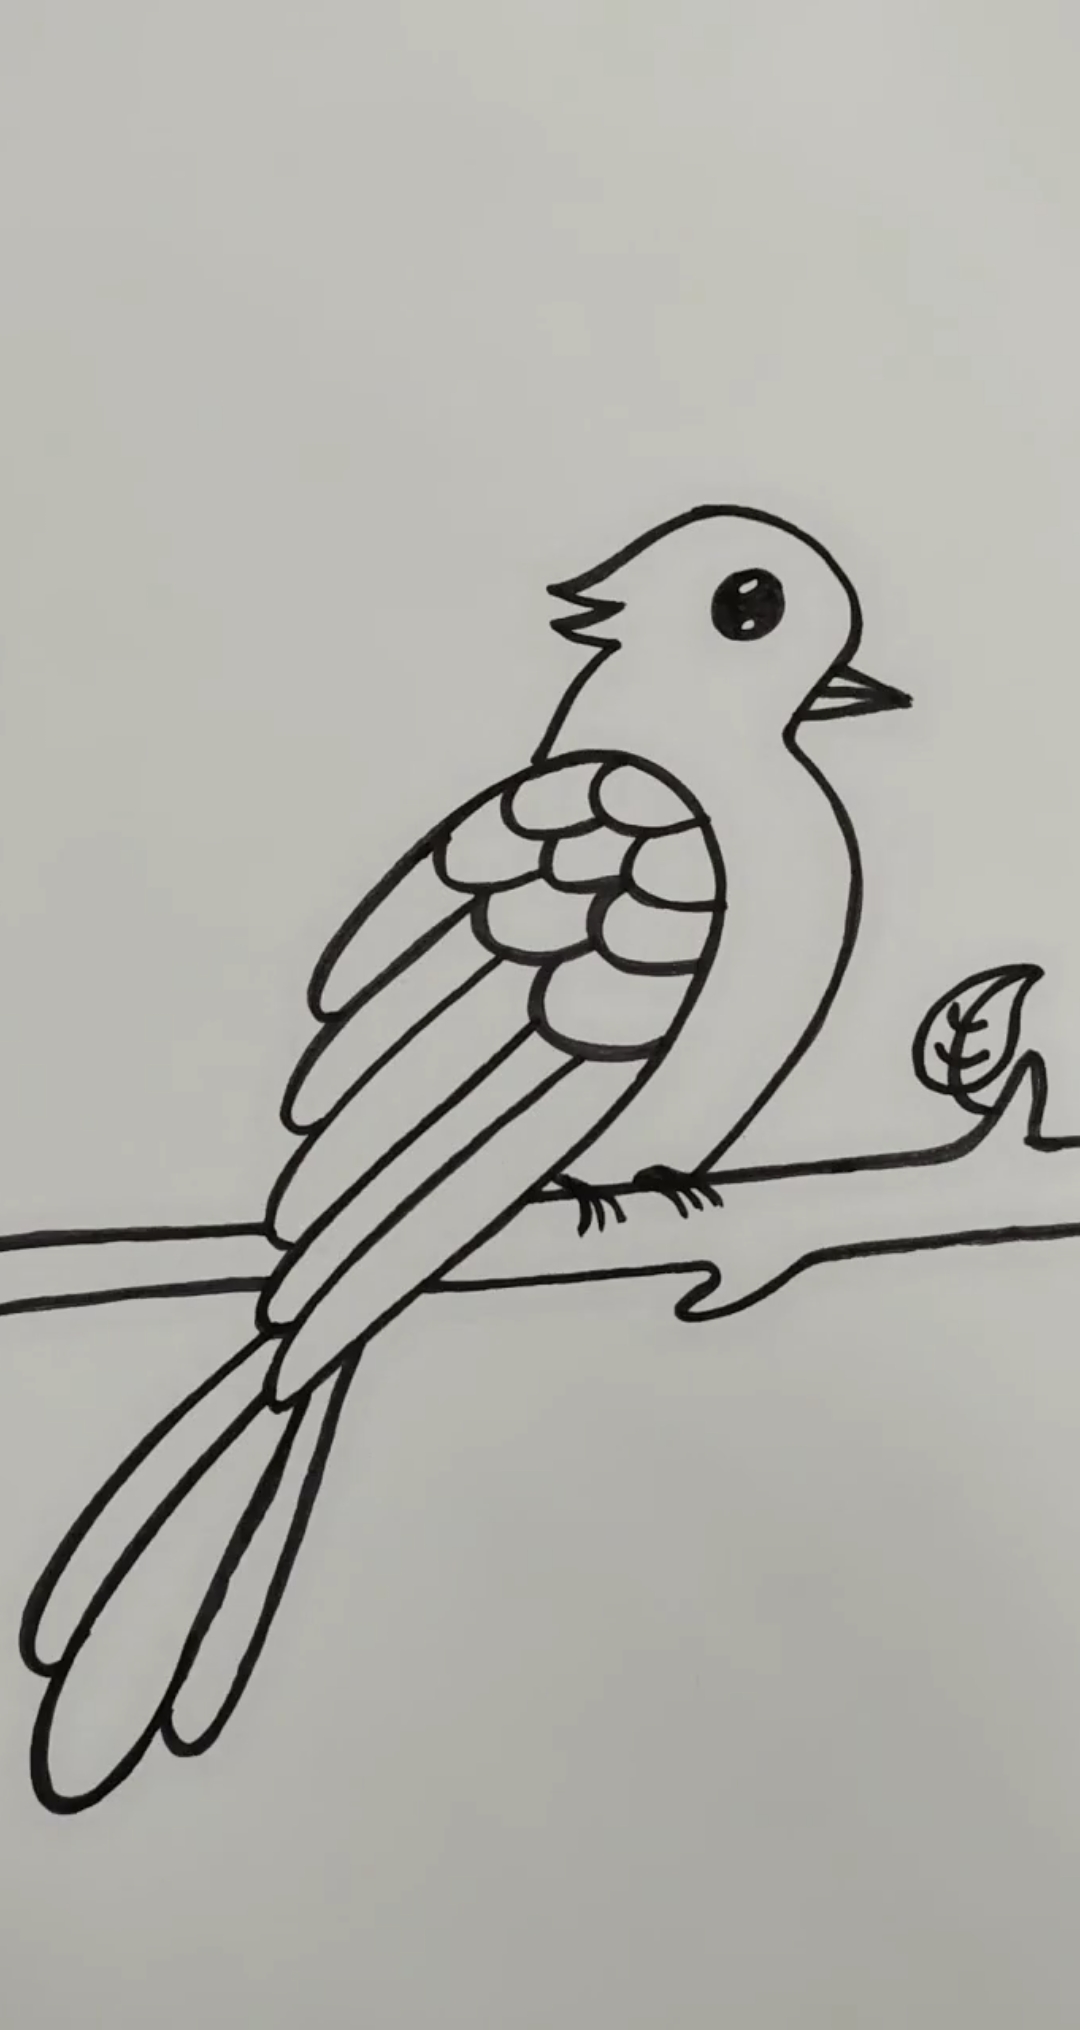 用数字画一只小鸟图片